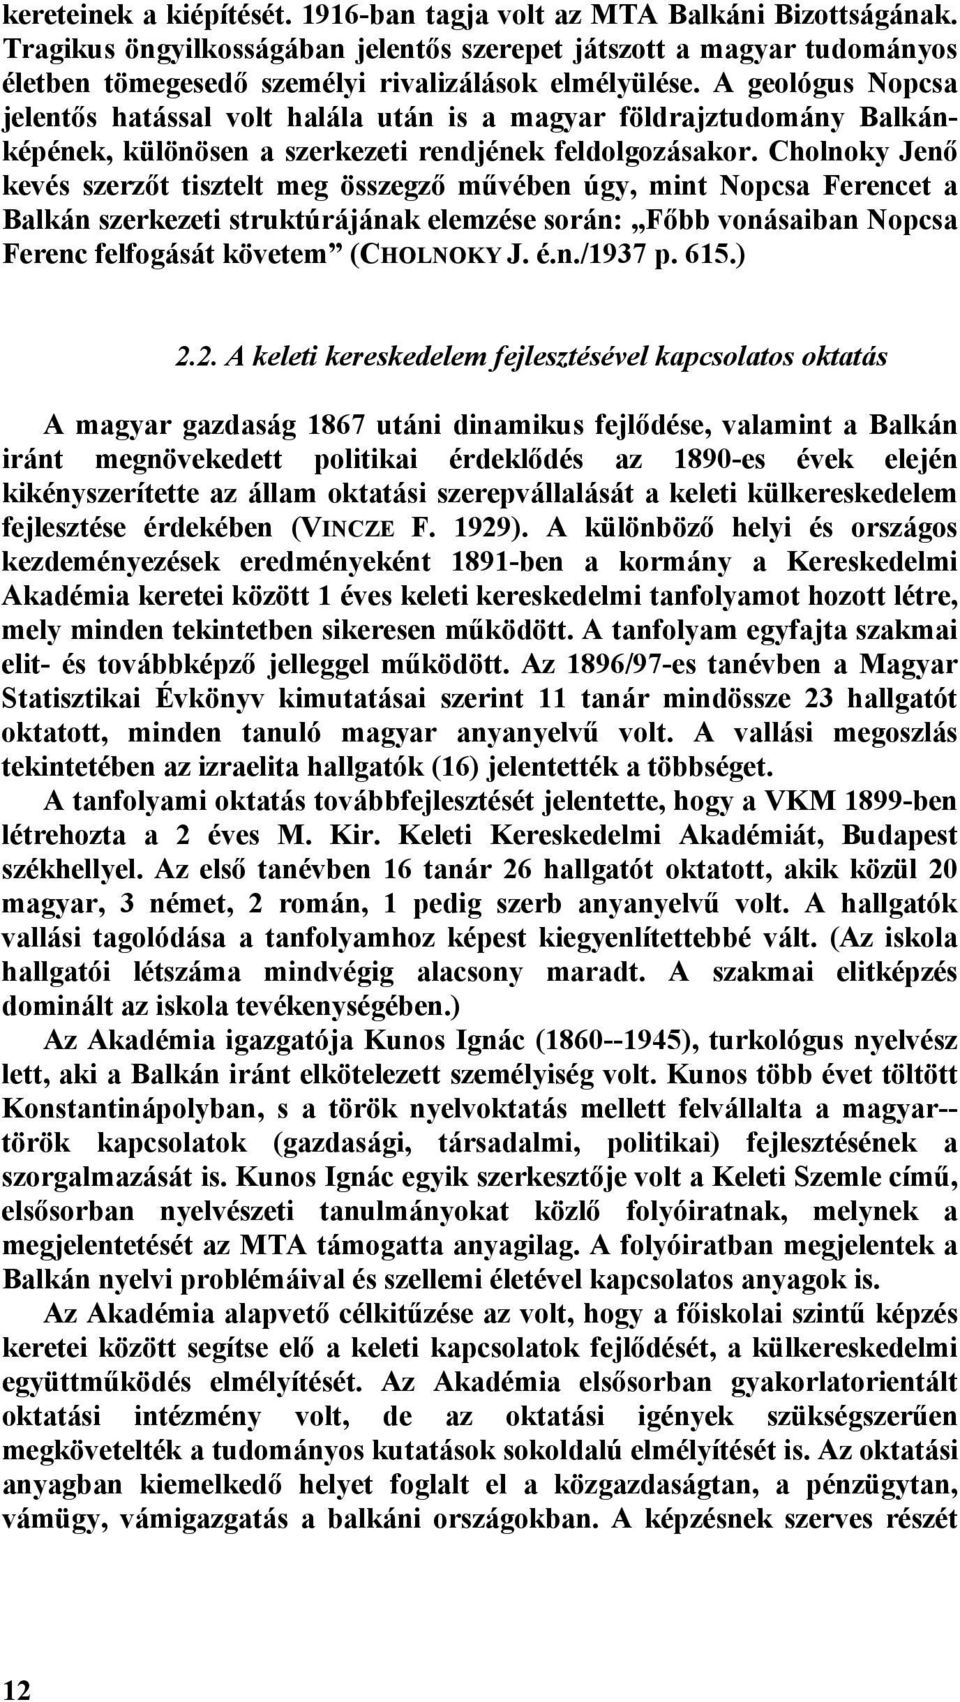 A geológus Nopcsa jelentős hatással volt halála után is a magyar földrajztudomány Balkánképének, különösen a szerkezeti rendjének feldolgozásakor.